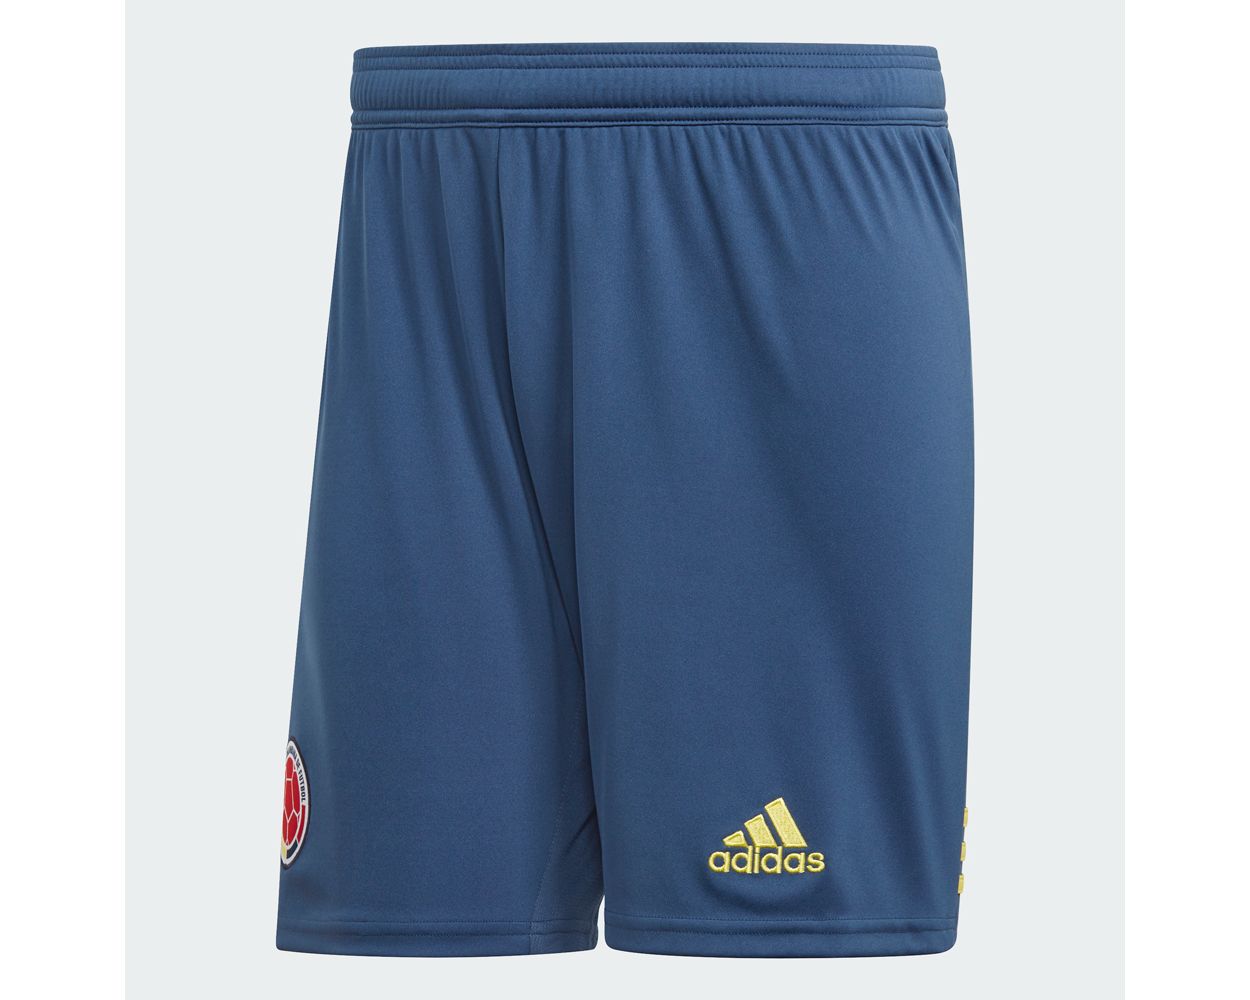 adidas shorts 2019